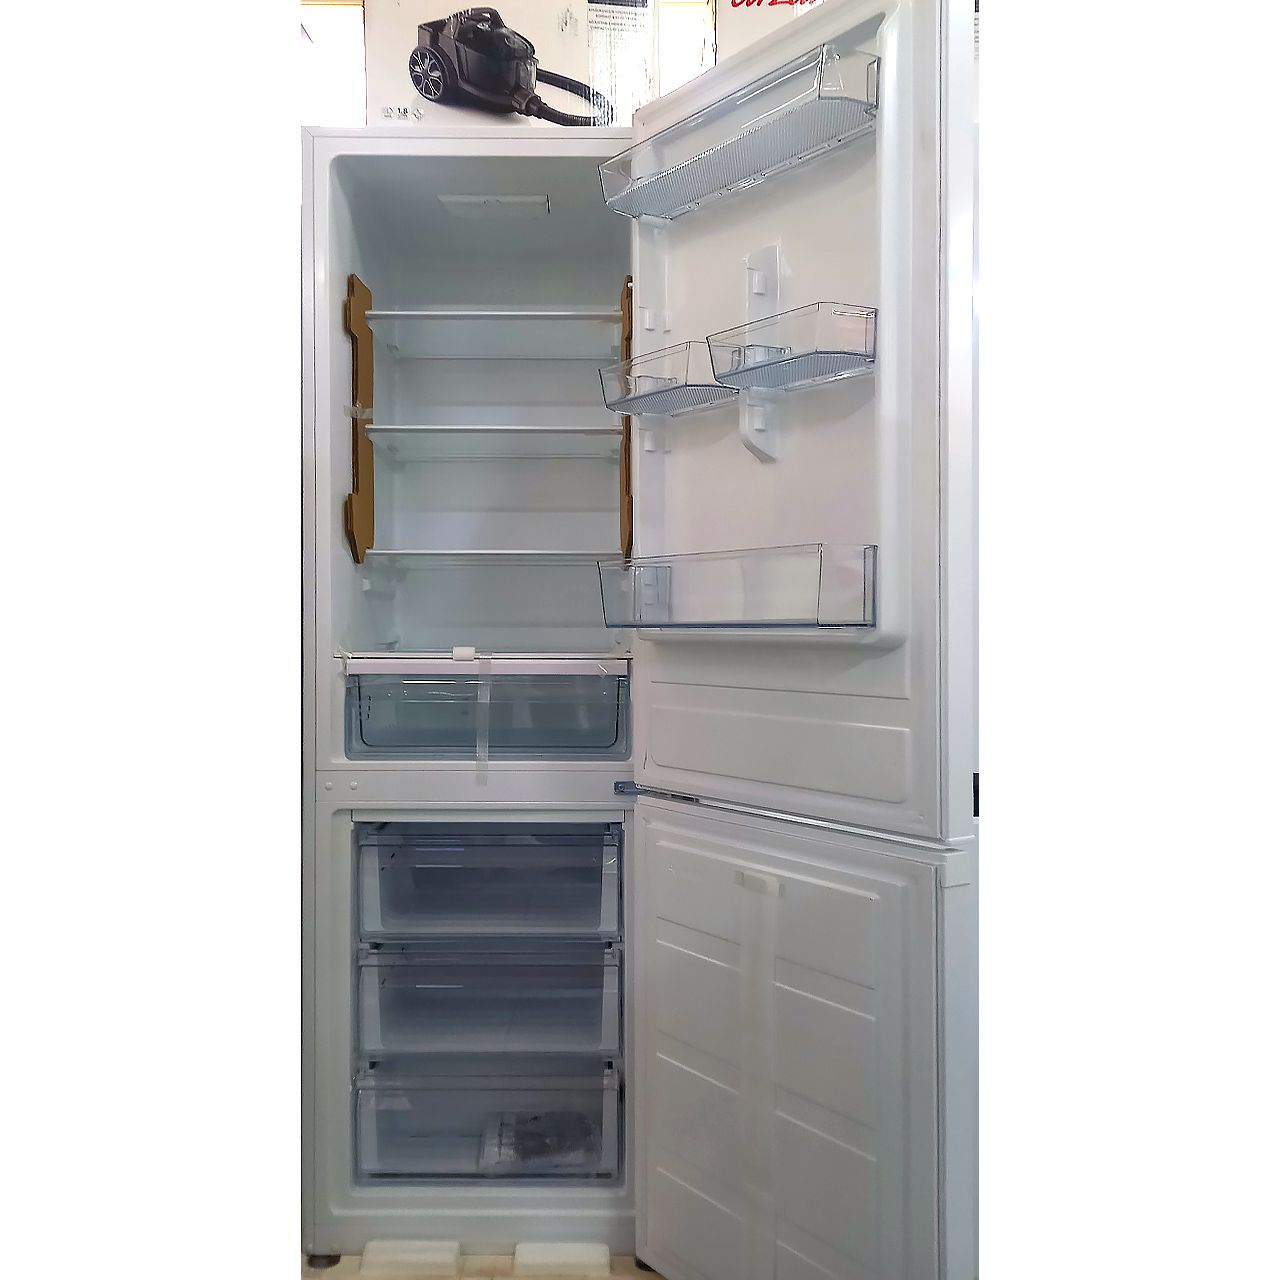 Холодильник двухкамерный Blesk 305 литров